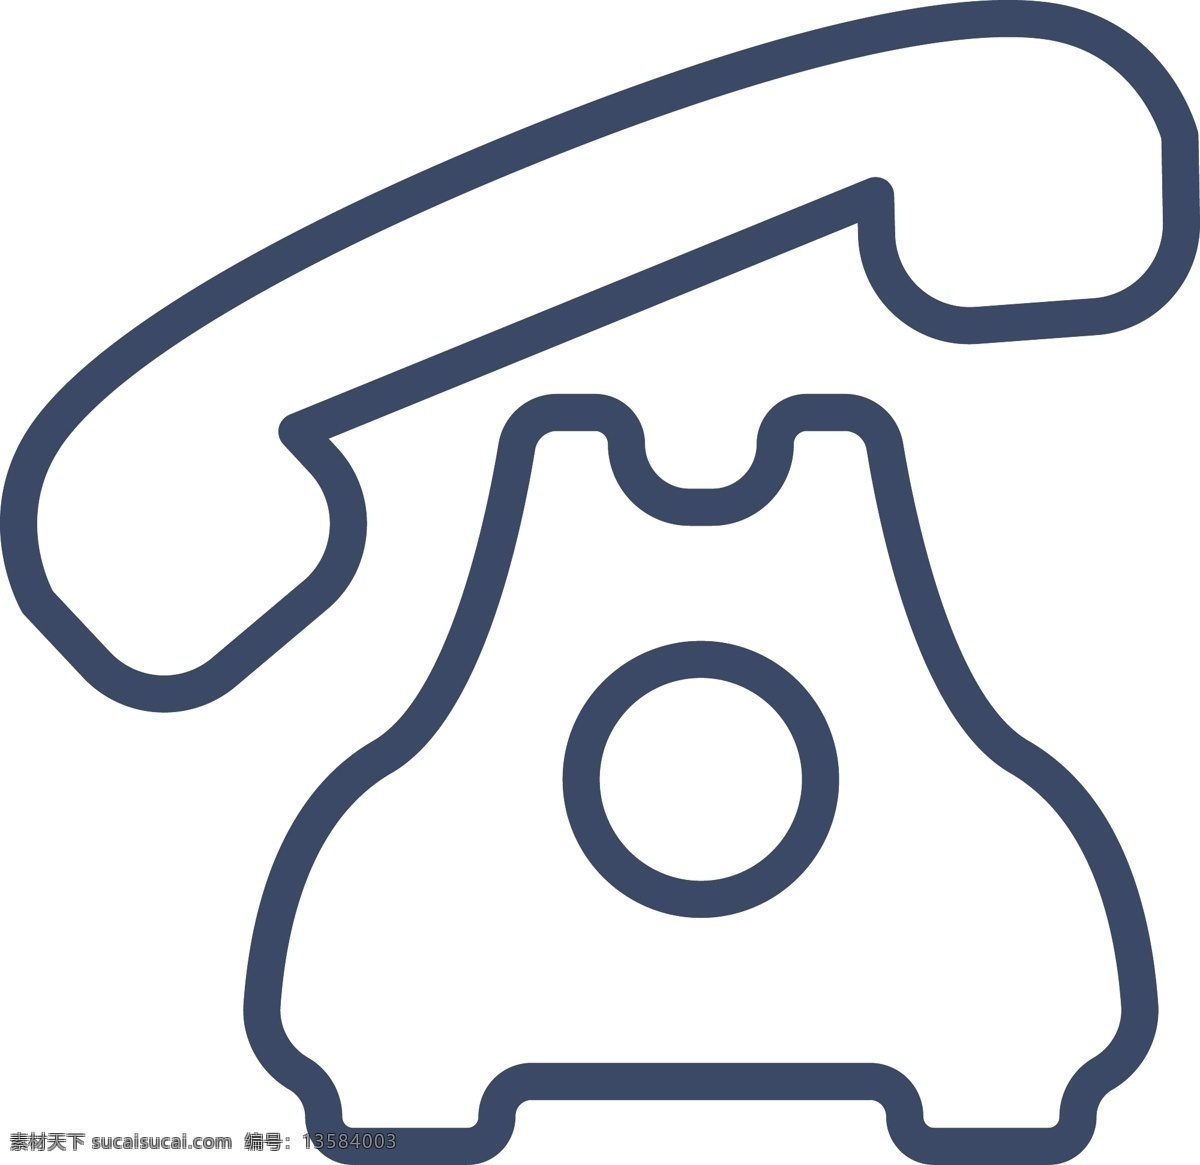 通话 ui 标识 标志 扁平 矢量 图标 简约 蓝色线条 线条 手机 话筒 麦克风 设置 播出 信号 wifi 童话 拨入 接收 主题 icon 打电话 座机 移动电话 智能手机 标志图标 网页小图标